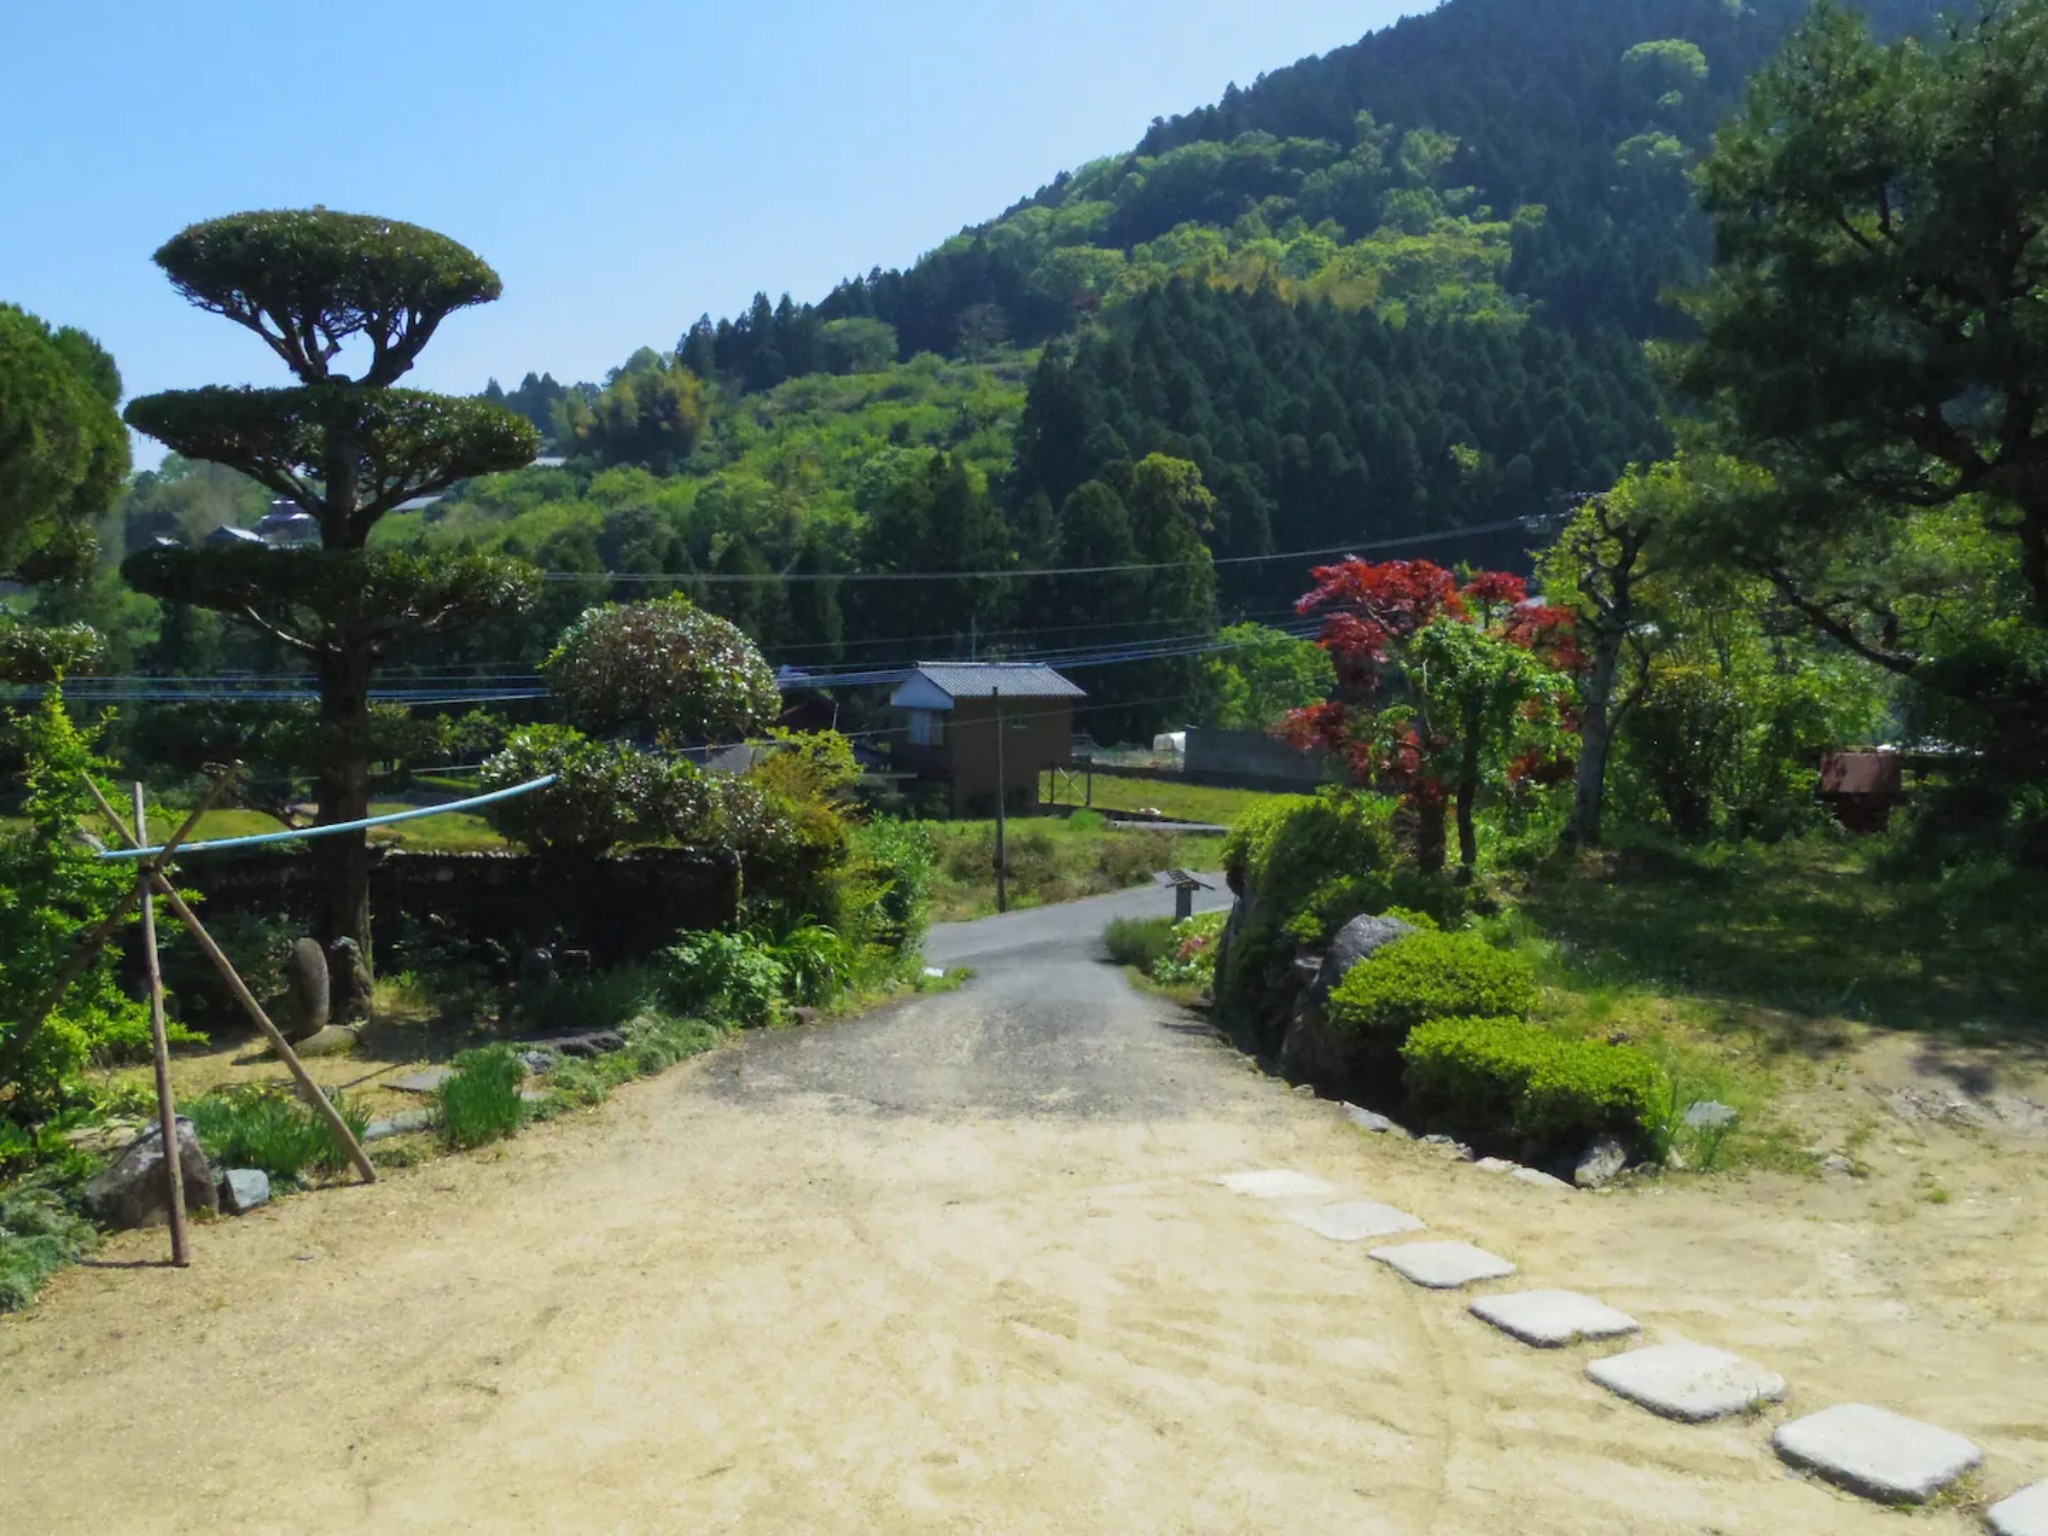 作良家(さらや)の離れ 神山町、築150年の伝統家屋